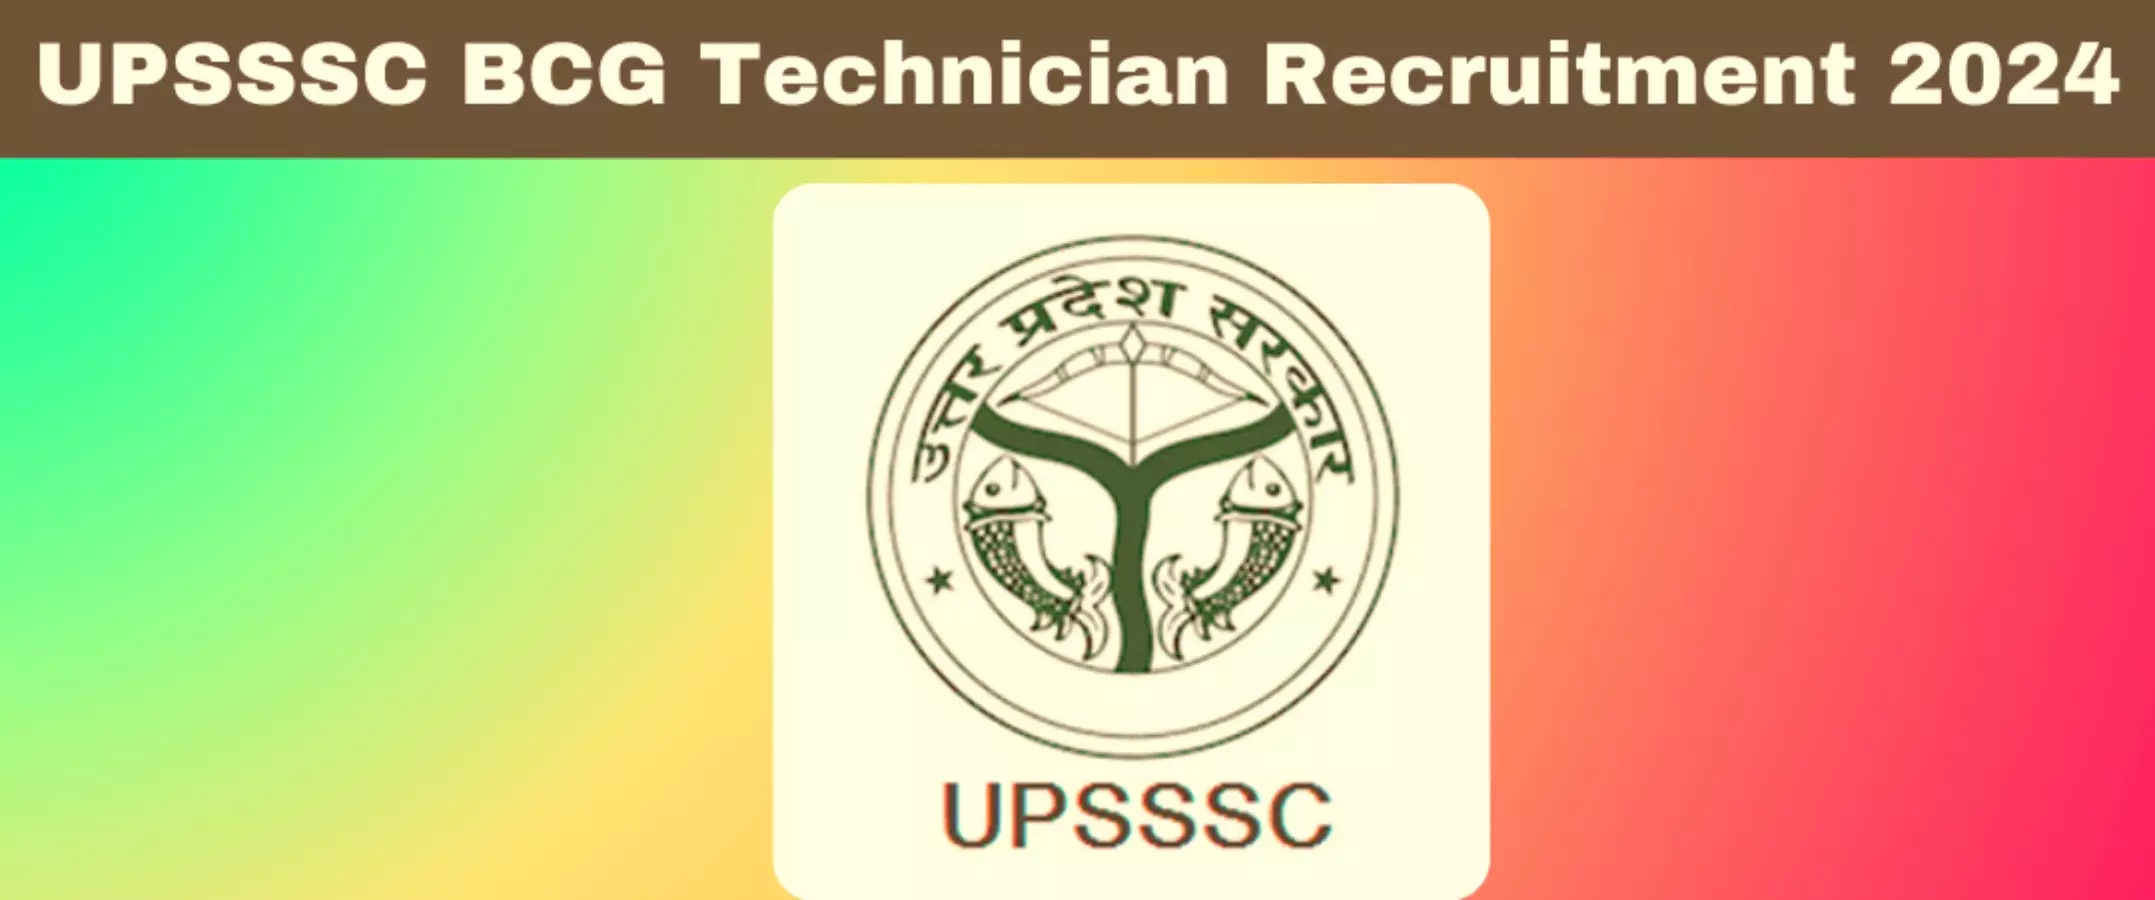 UPSSSC Recruitment 2024: यूपीएसएसएससी बीसीजी टेक्नीशियन के 255 पदों के लिए भर्ती शुरू, आवेदन शुल्क 25 रुपये